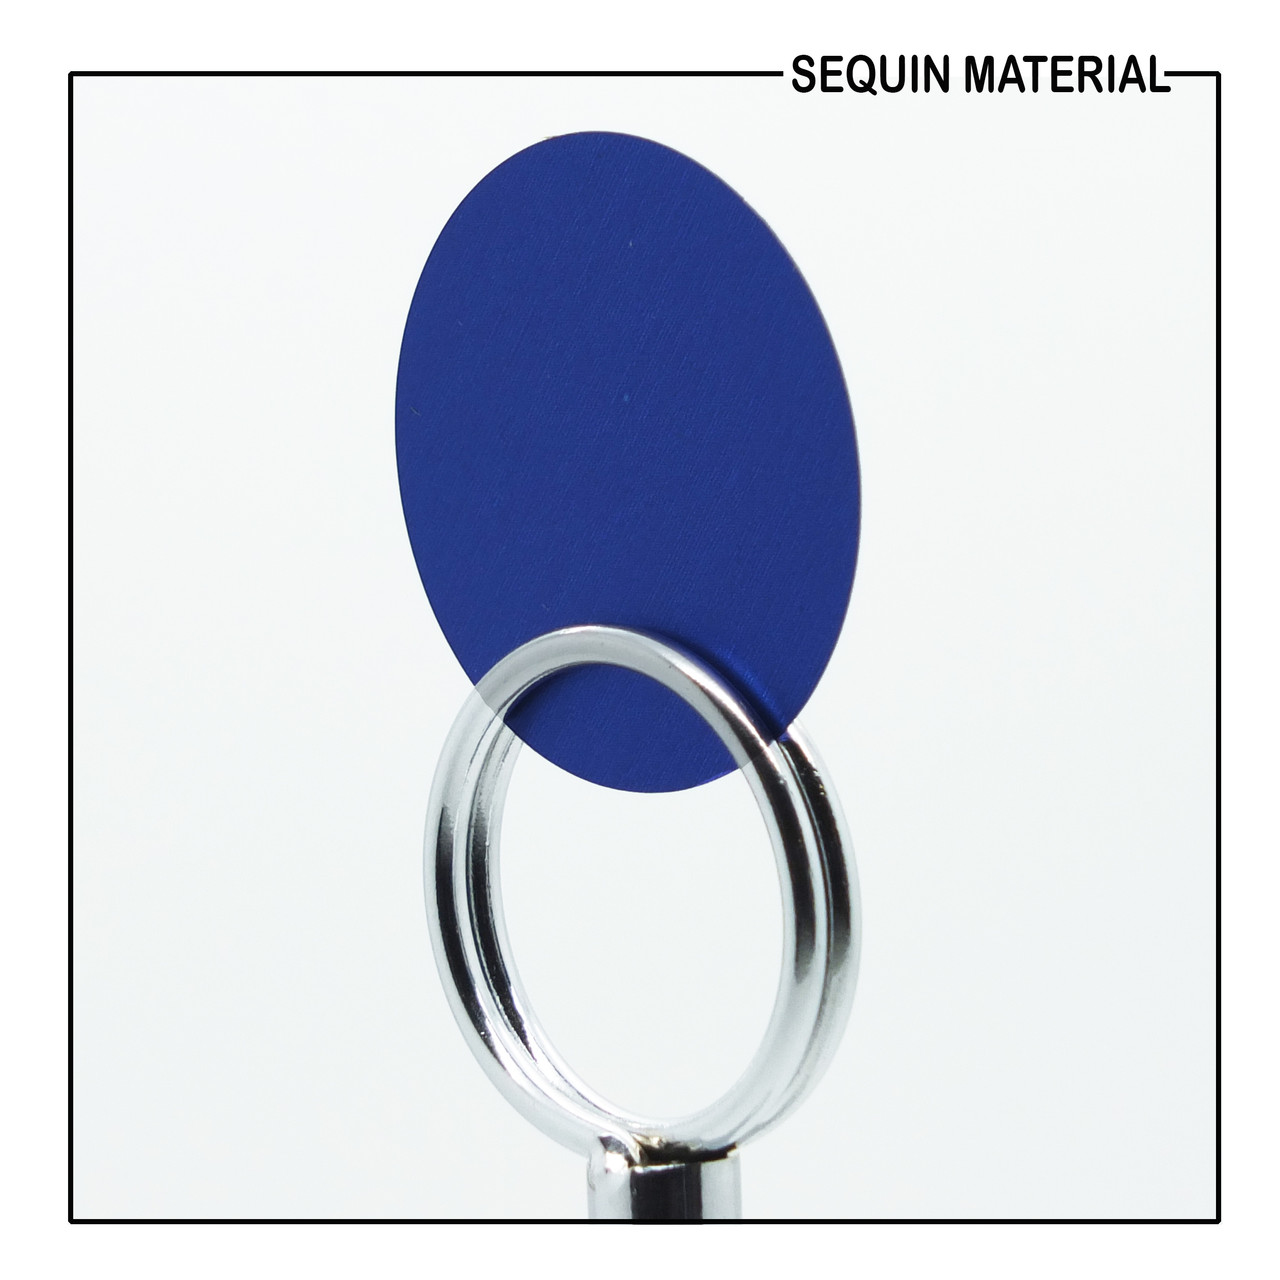 SequinsUSA Cobalt Blue Matte Satin Metallic Sequin Material RL612